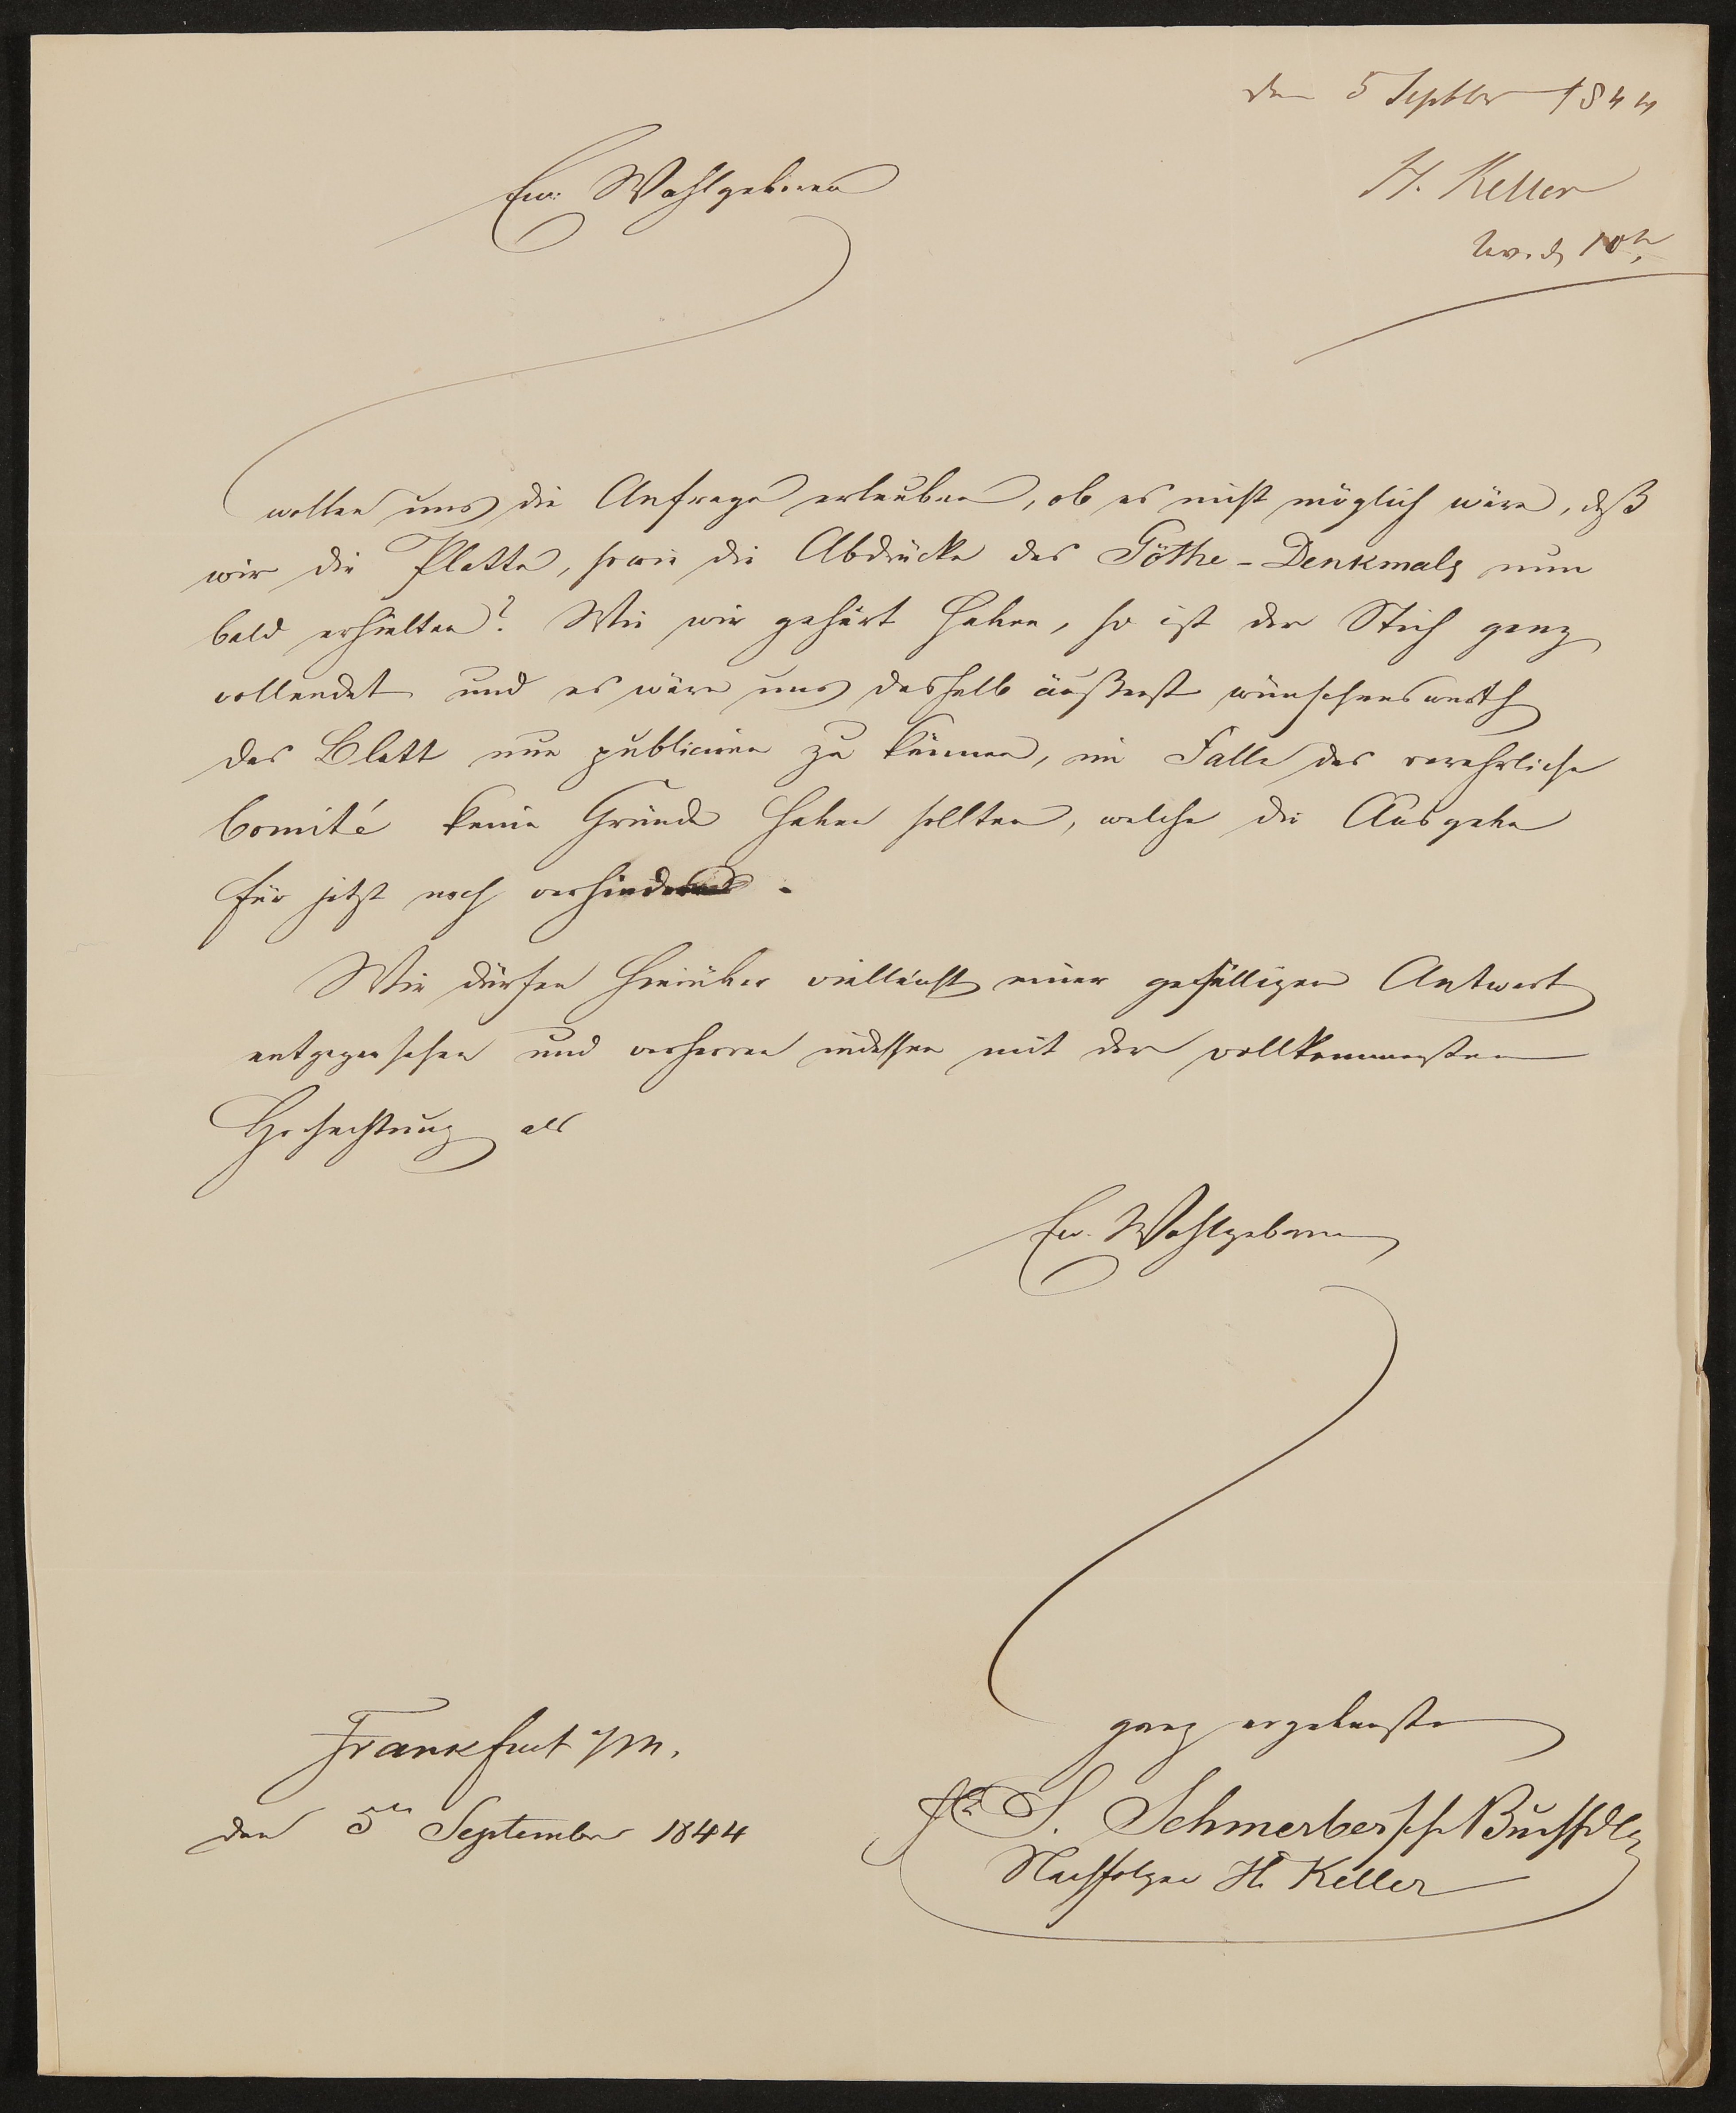 Brief der S. Schmerber'schen Buchhandlung Nachf. H. Keller an Friedrich John vom 5.9.1844 (Freies Deutsches Hochstift / Frankfurter Goethe-Museum Public Domain Mark)